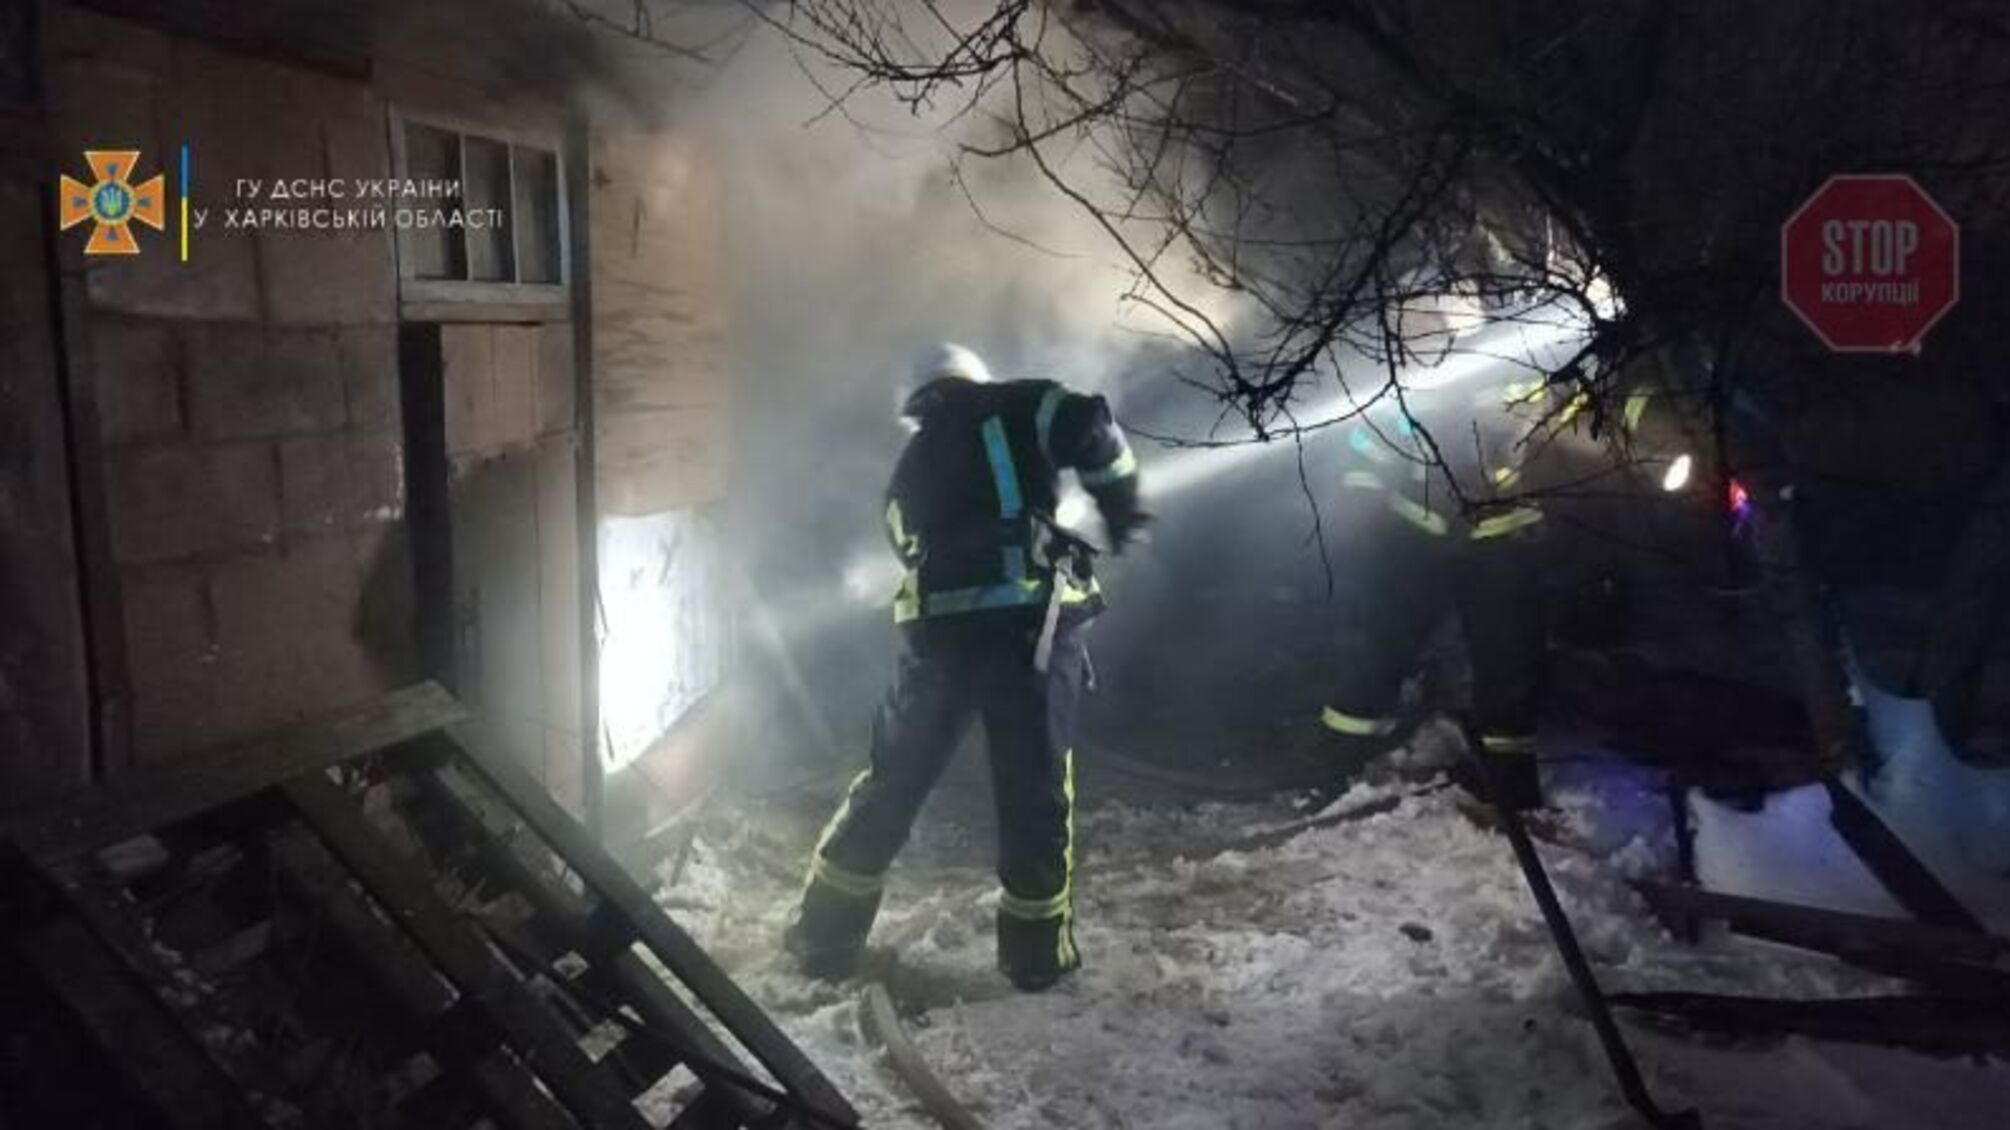 В Харьковской области произошел пожар в хозяйственном здании, есть погибшие (фото)